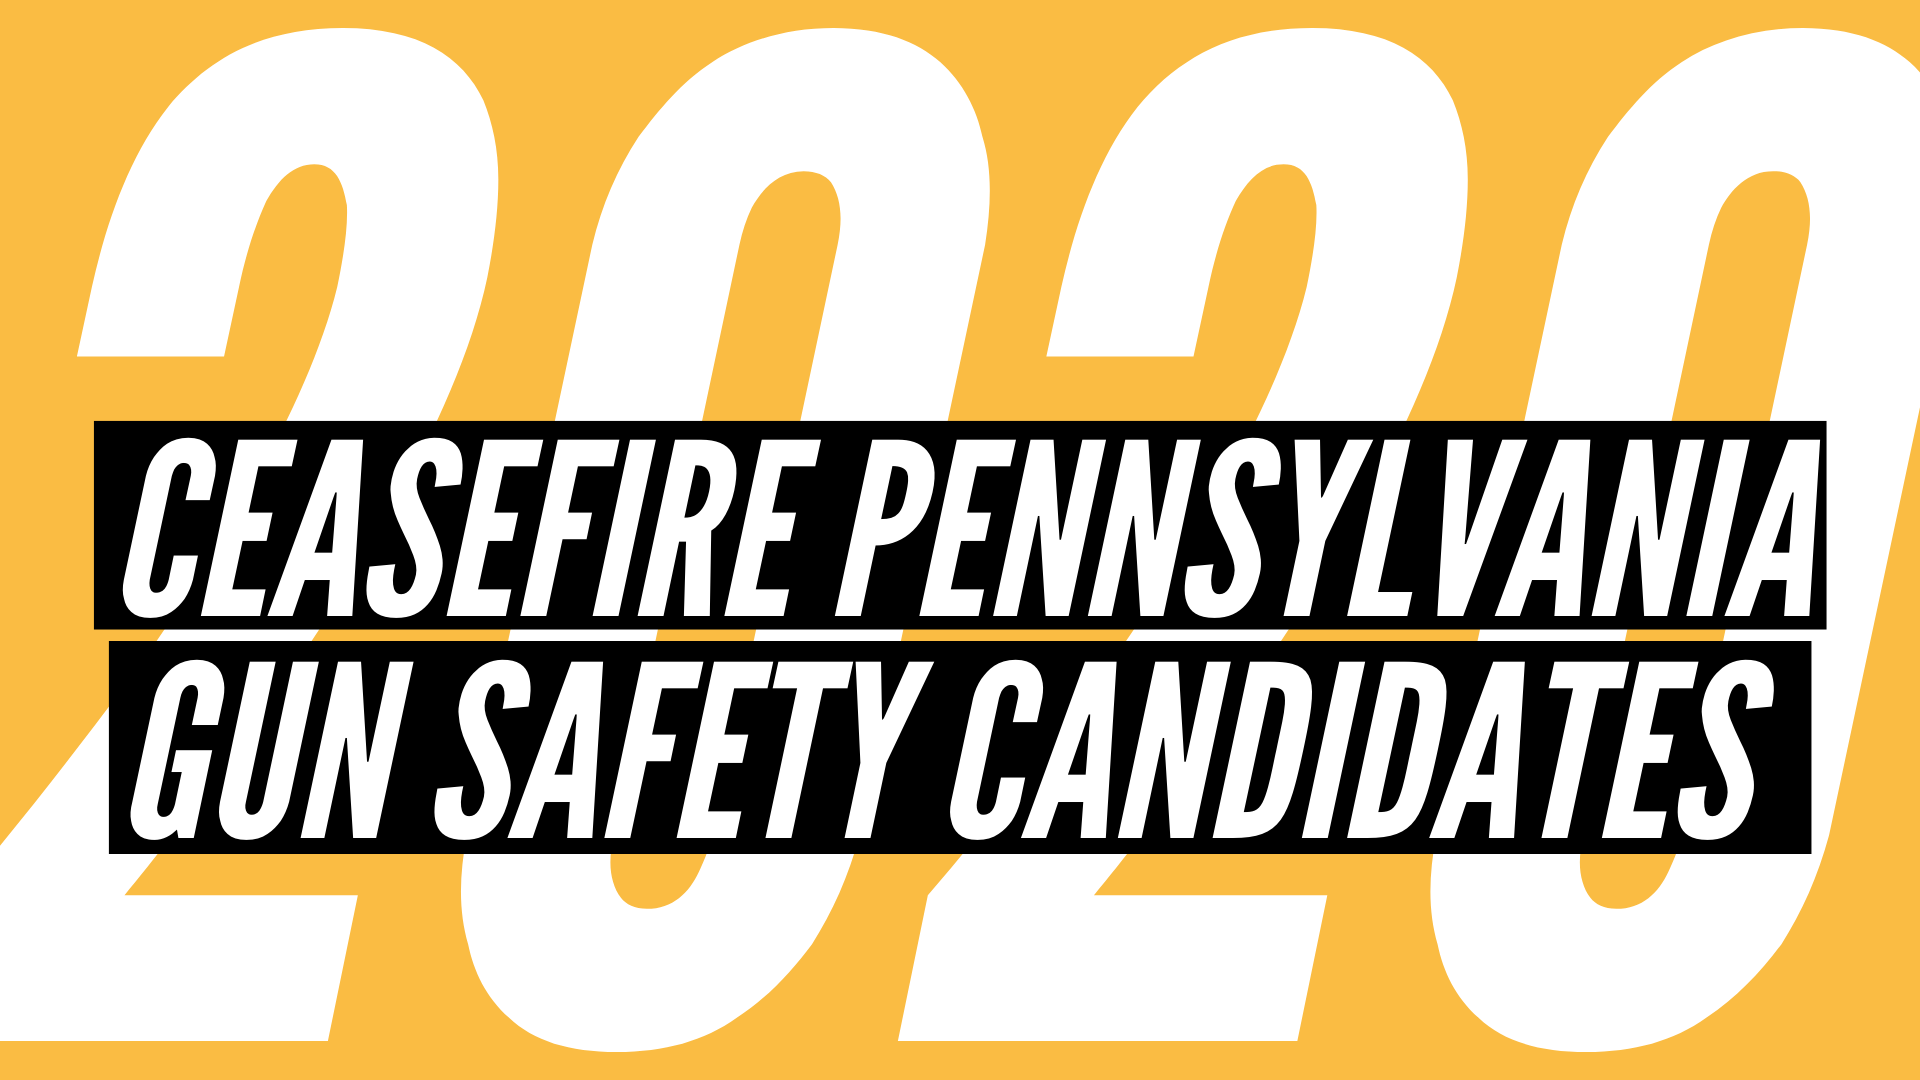 CeaseFire Pennsylvania Endorses 70 Gun Safety Candidates for 2020